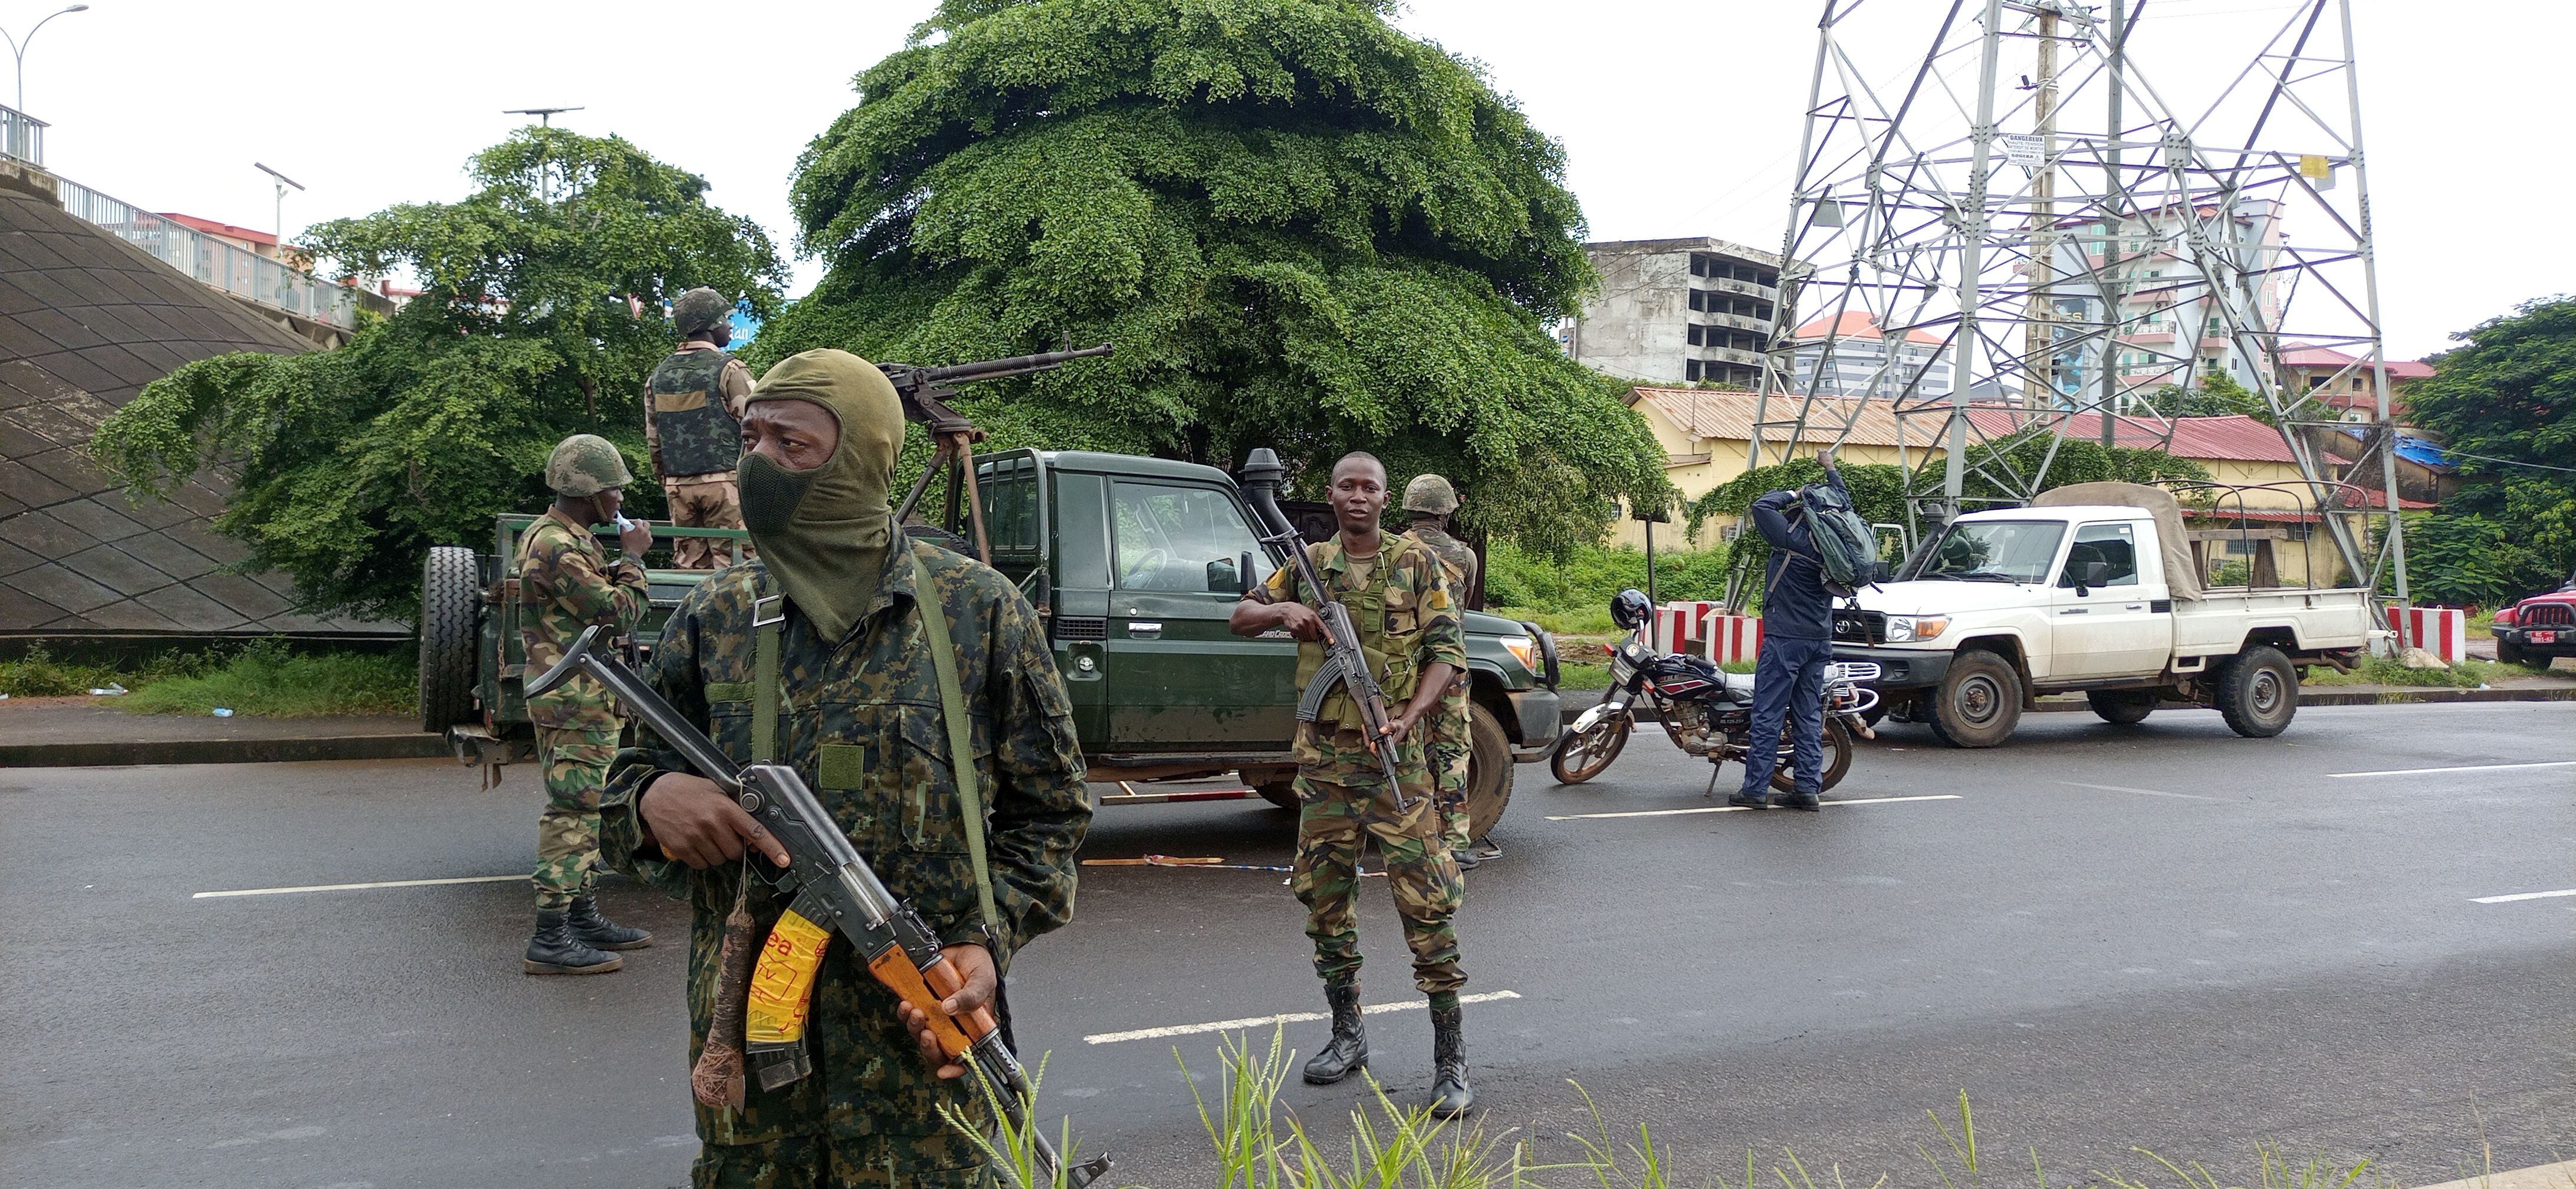 Los soldados en medio de las calles de Guinea. Foto: REUTERS/ Souleymane Camara  